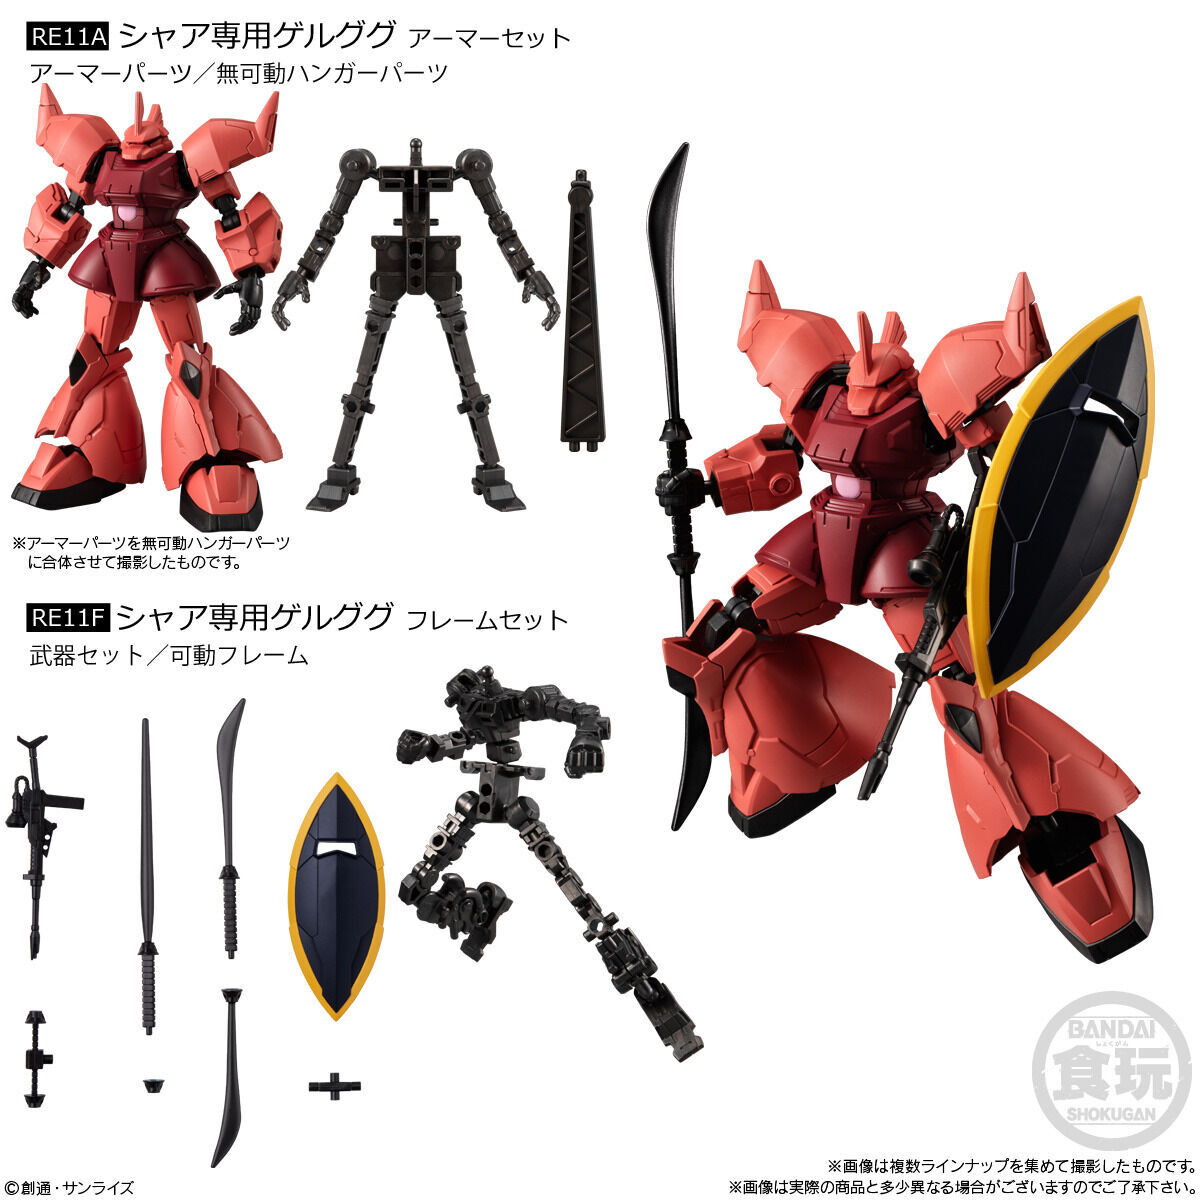 Mobile Suit Gundam G Frame Full Armor Vol.06